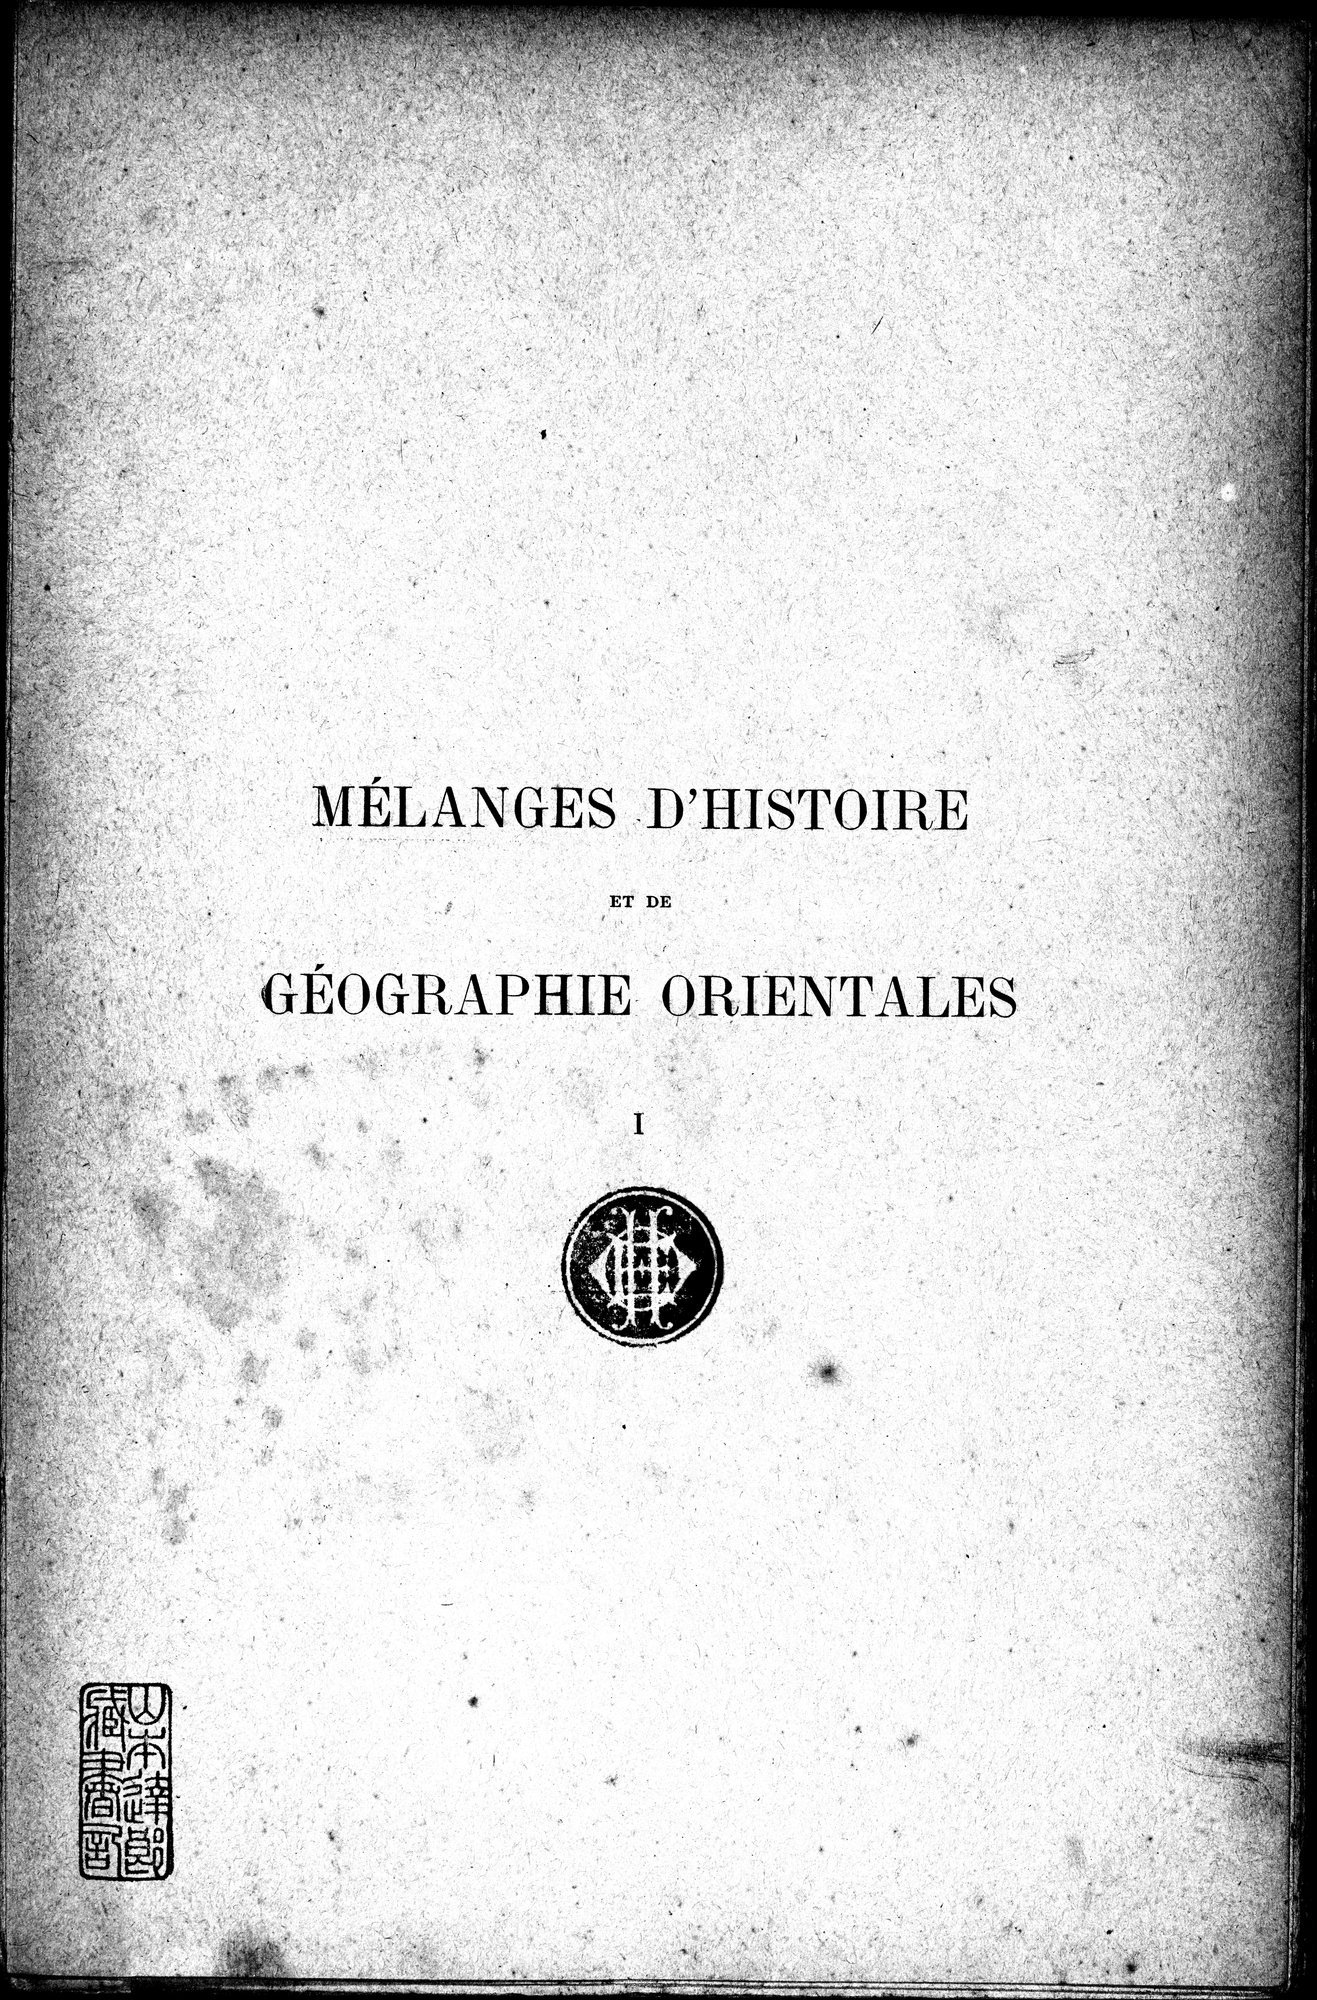 Mélanges d'Histoire et de Géographie Orientales : vol.1 / Page 5 (Grayscale High Resolution Image)